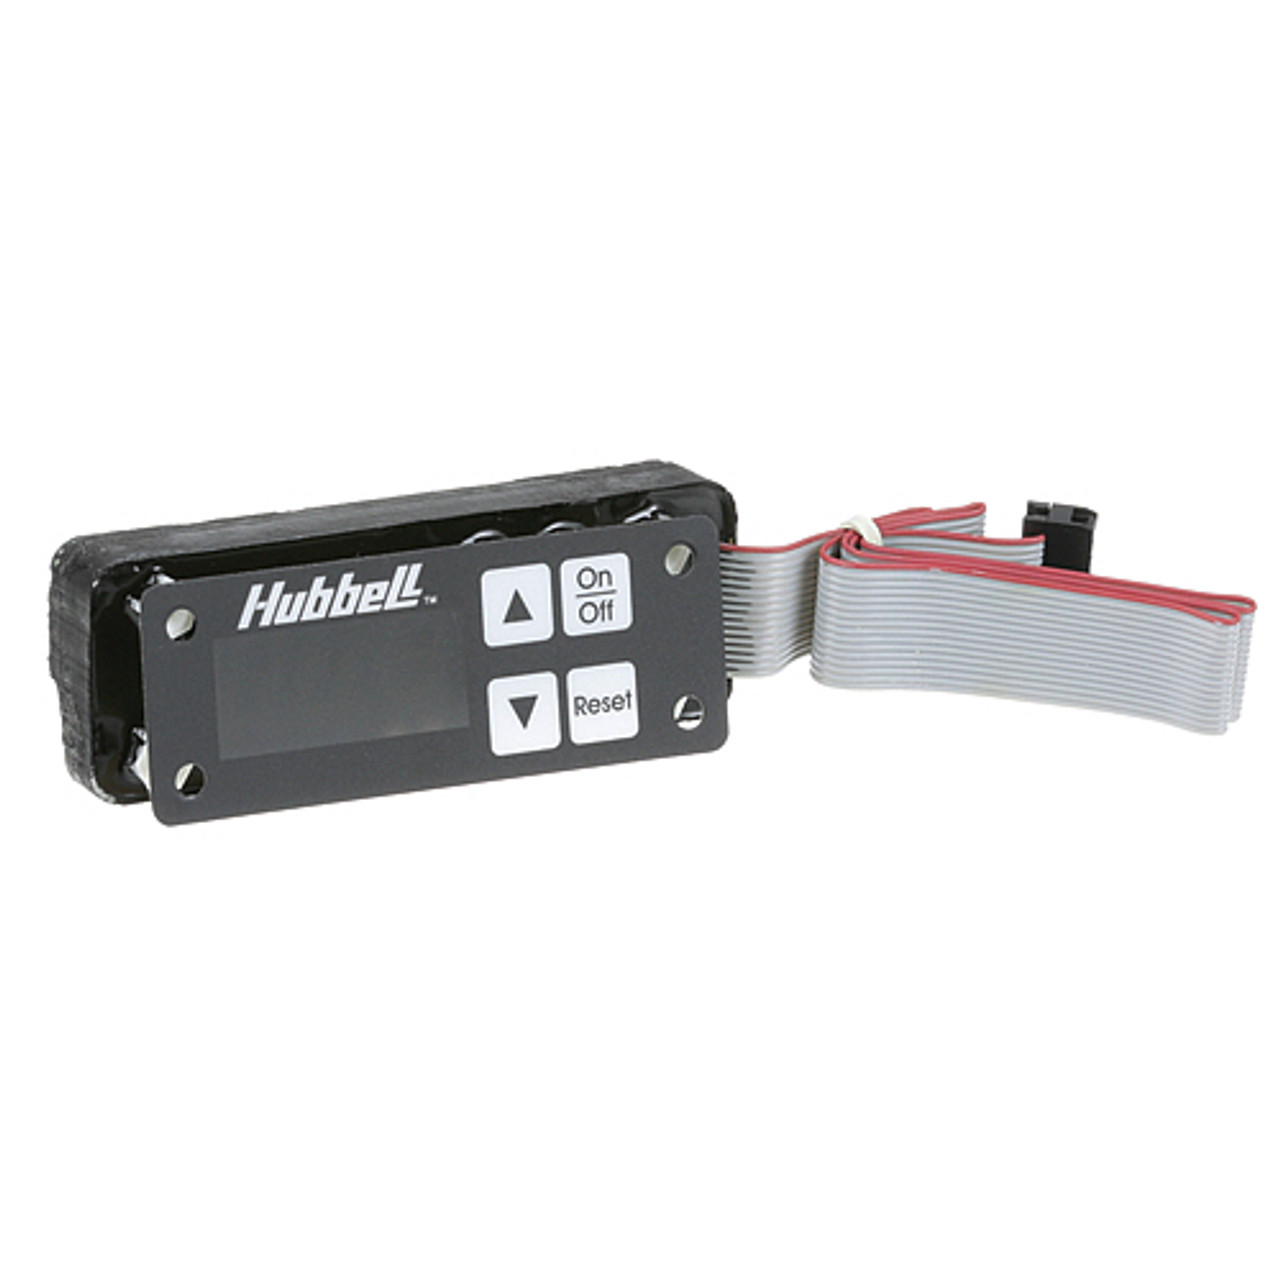 Hubbell TD1000 - Digital Display Module